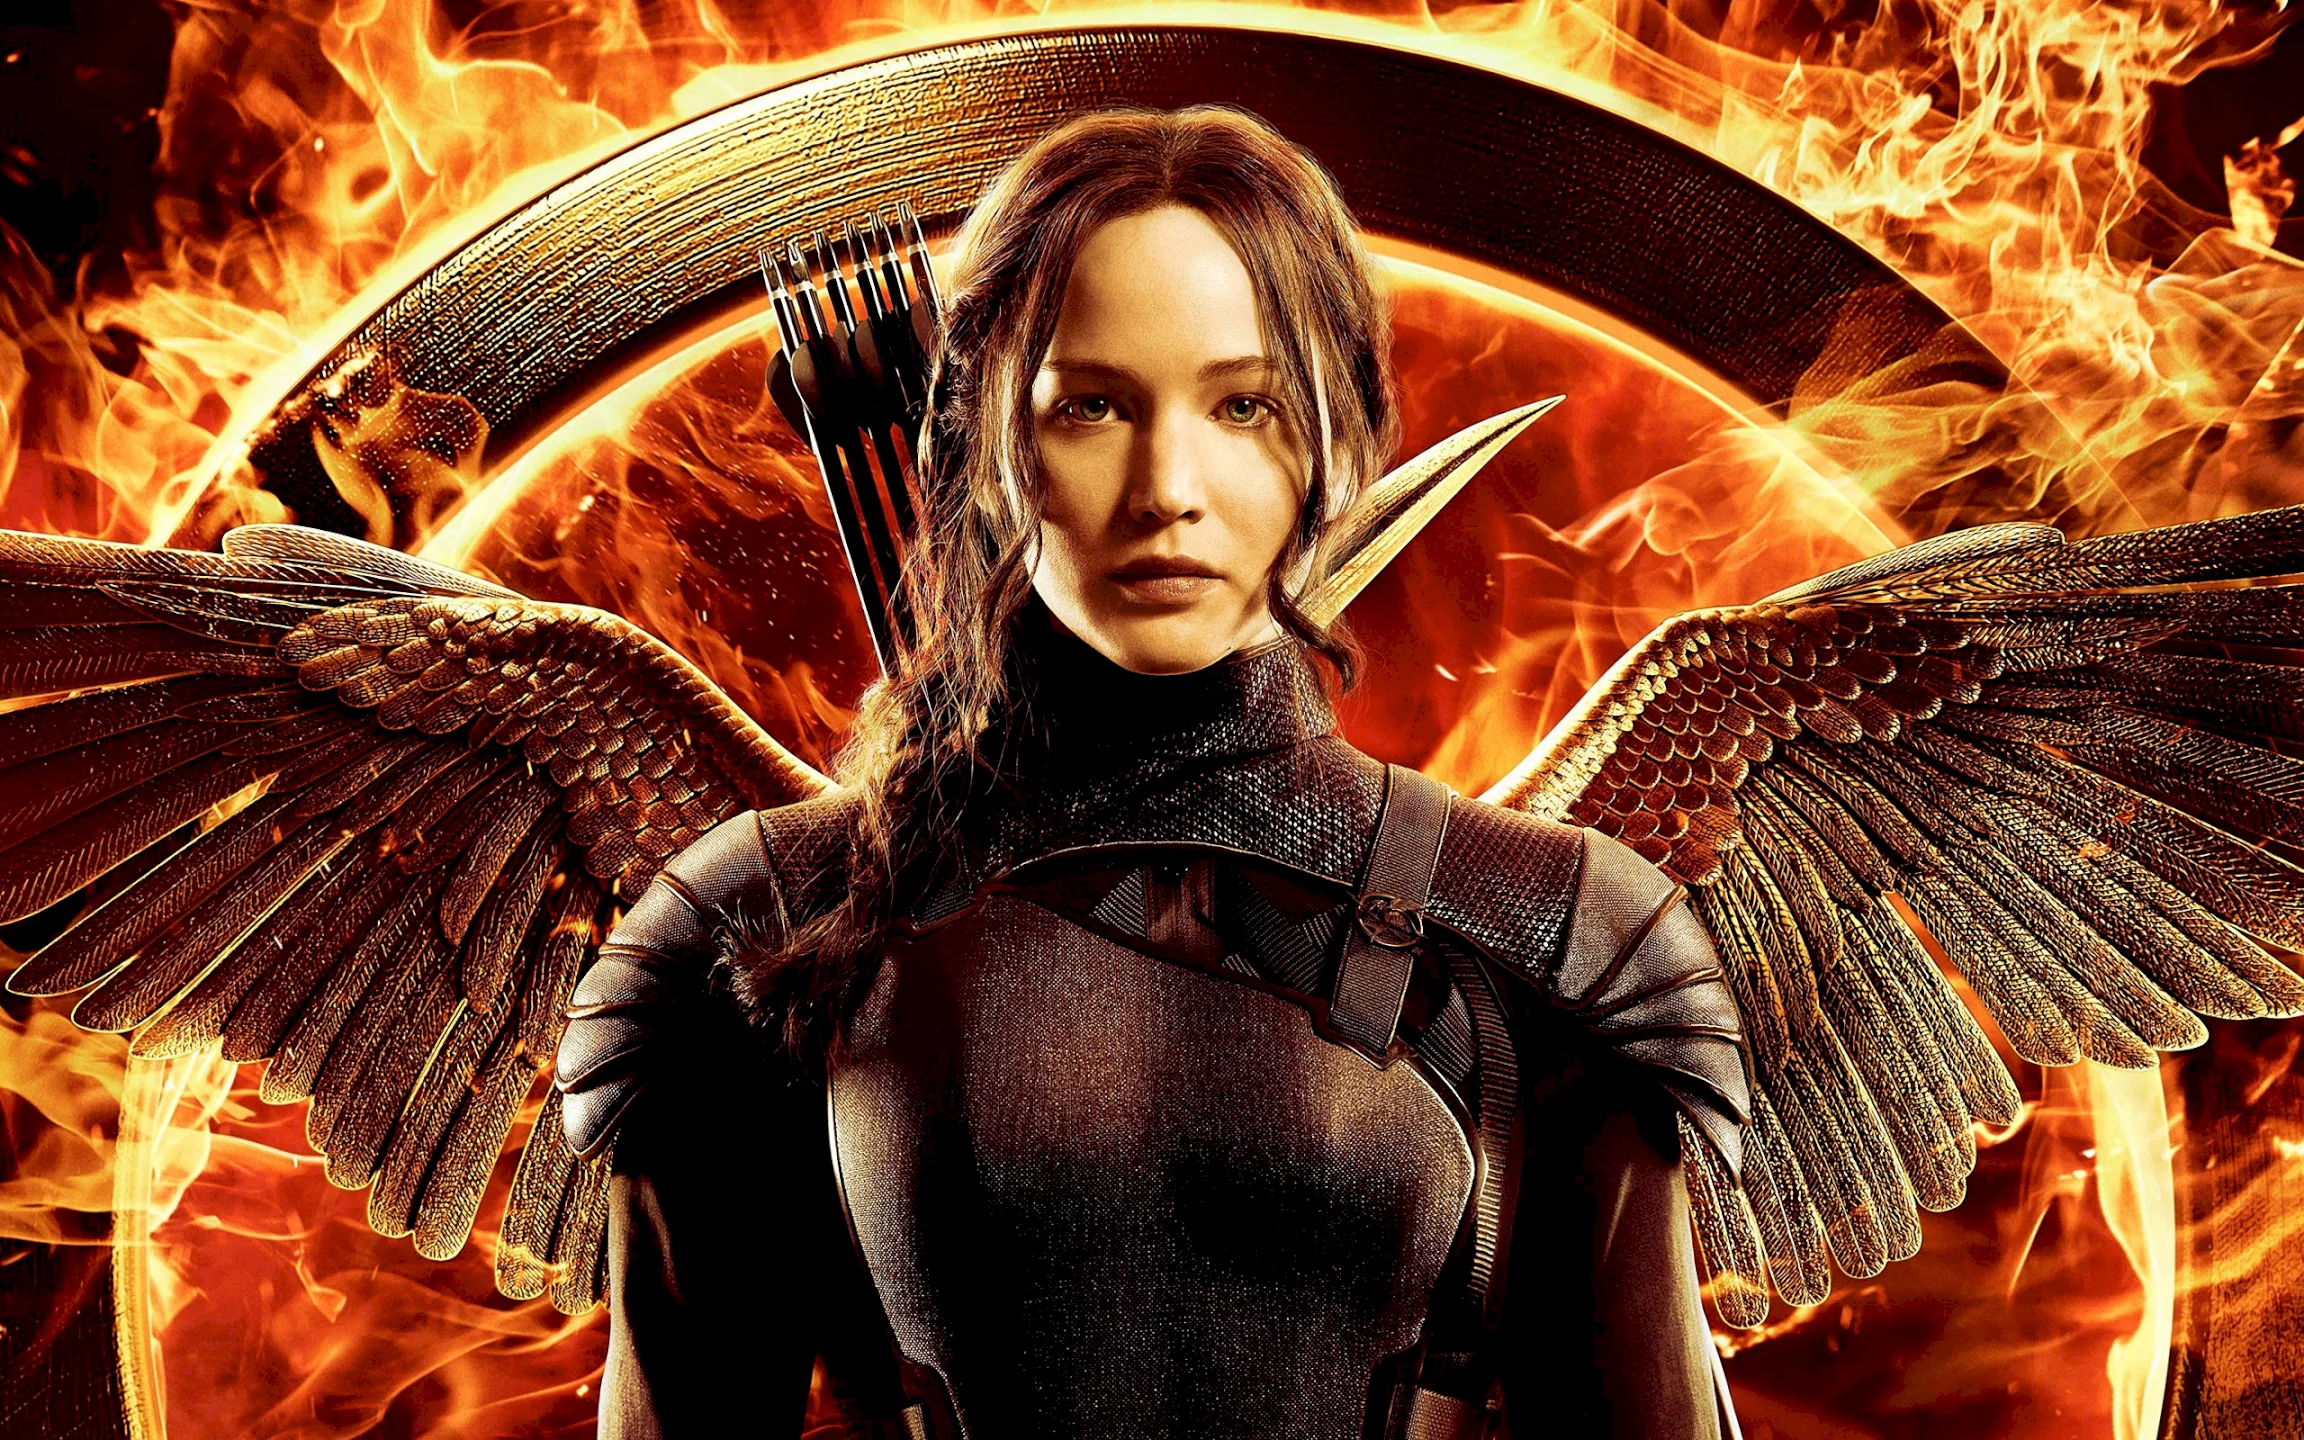 Photo du film : Hunger Games : la révolte, 2e partie